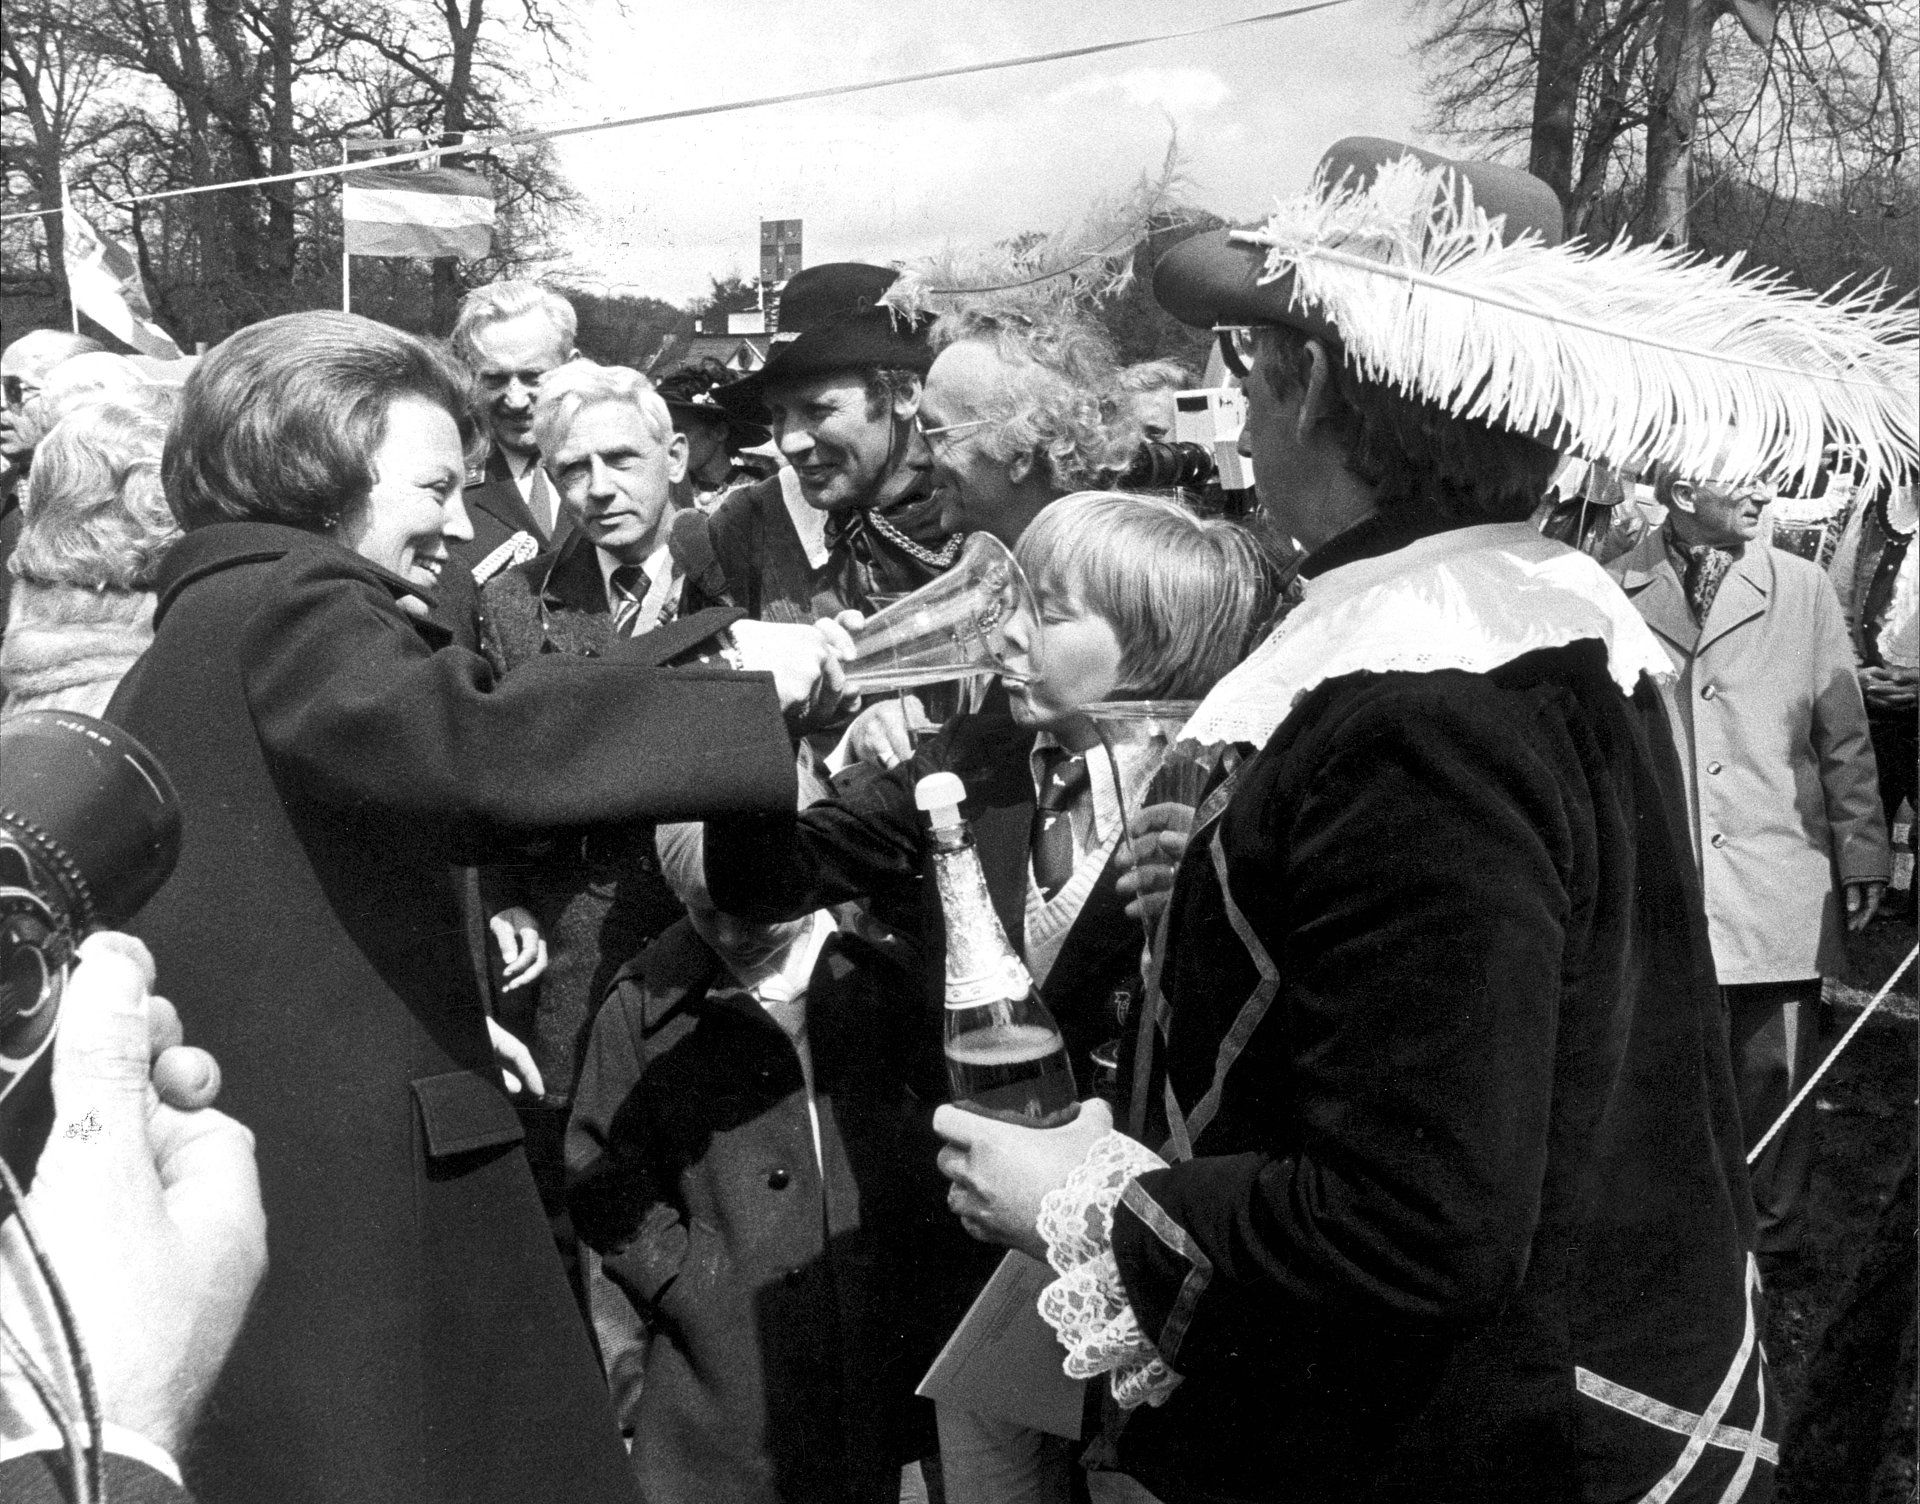 Wat een bijzonder kiekje! Prinses Beatrix geeft haar zoon Prins Alexander een slokje champagne uit een speciaal glas dat haar wordt aangeboden tijdens een wandeling voor het paleis (1979).